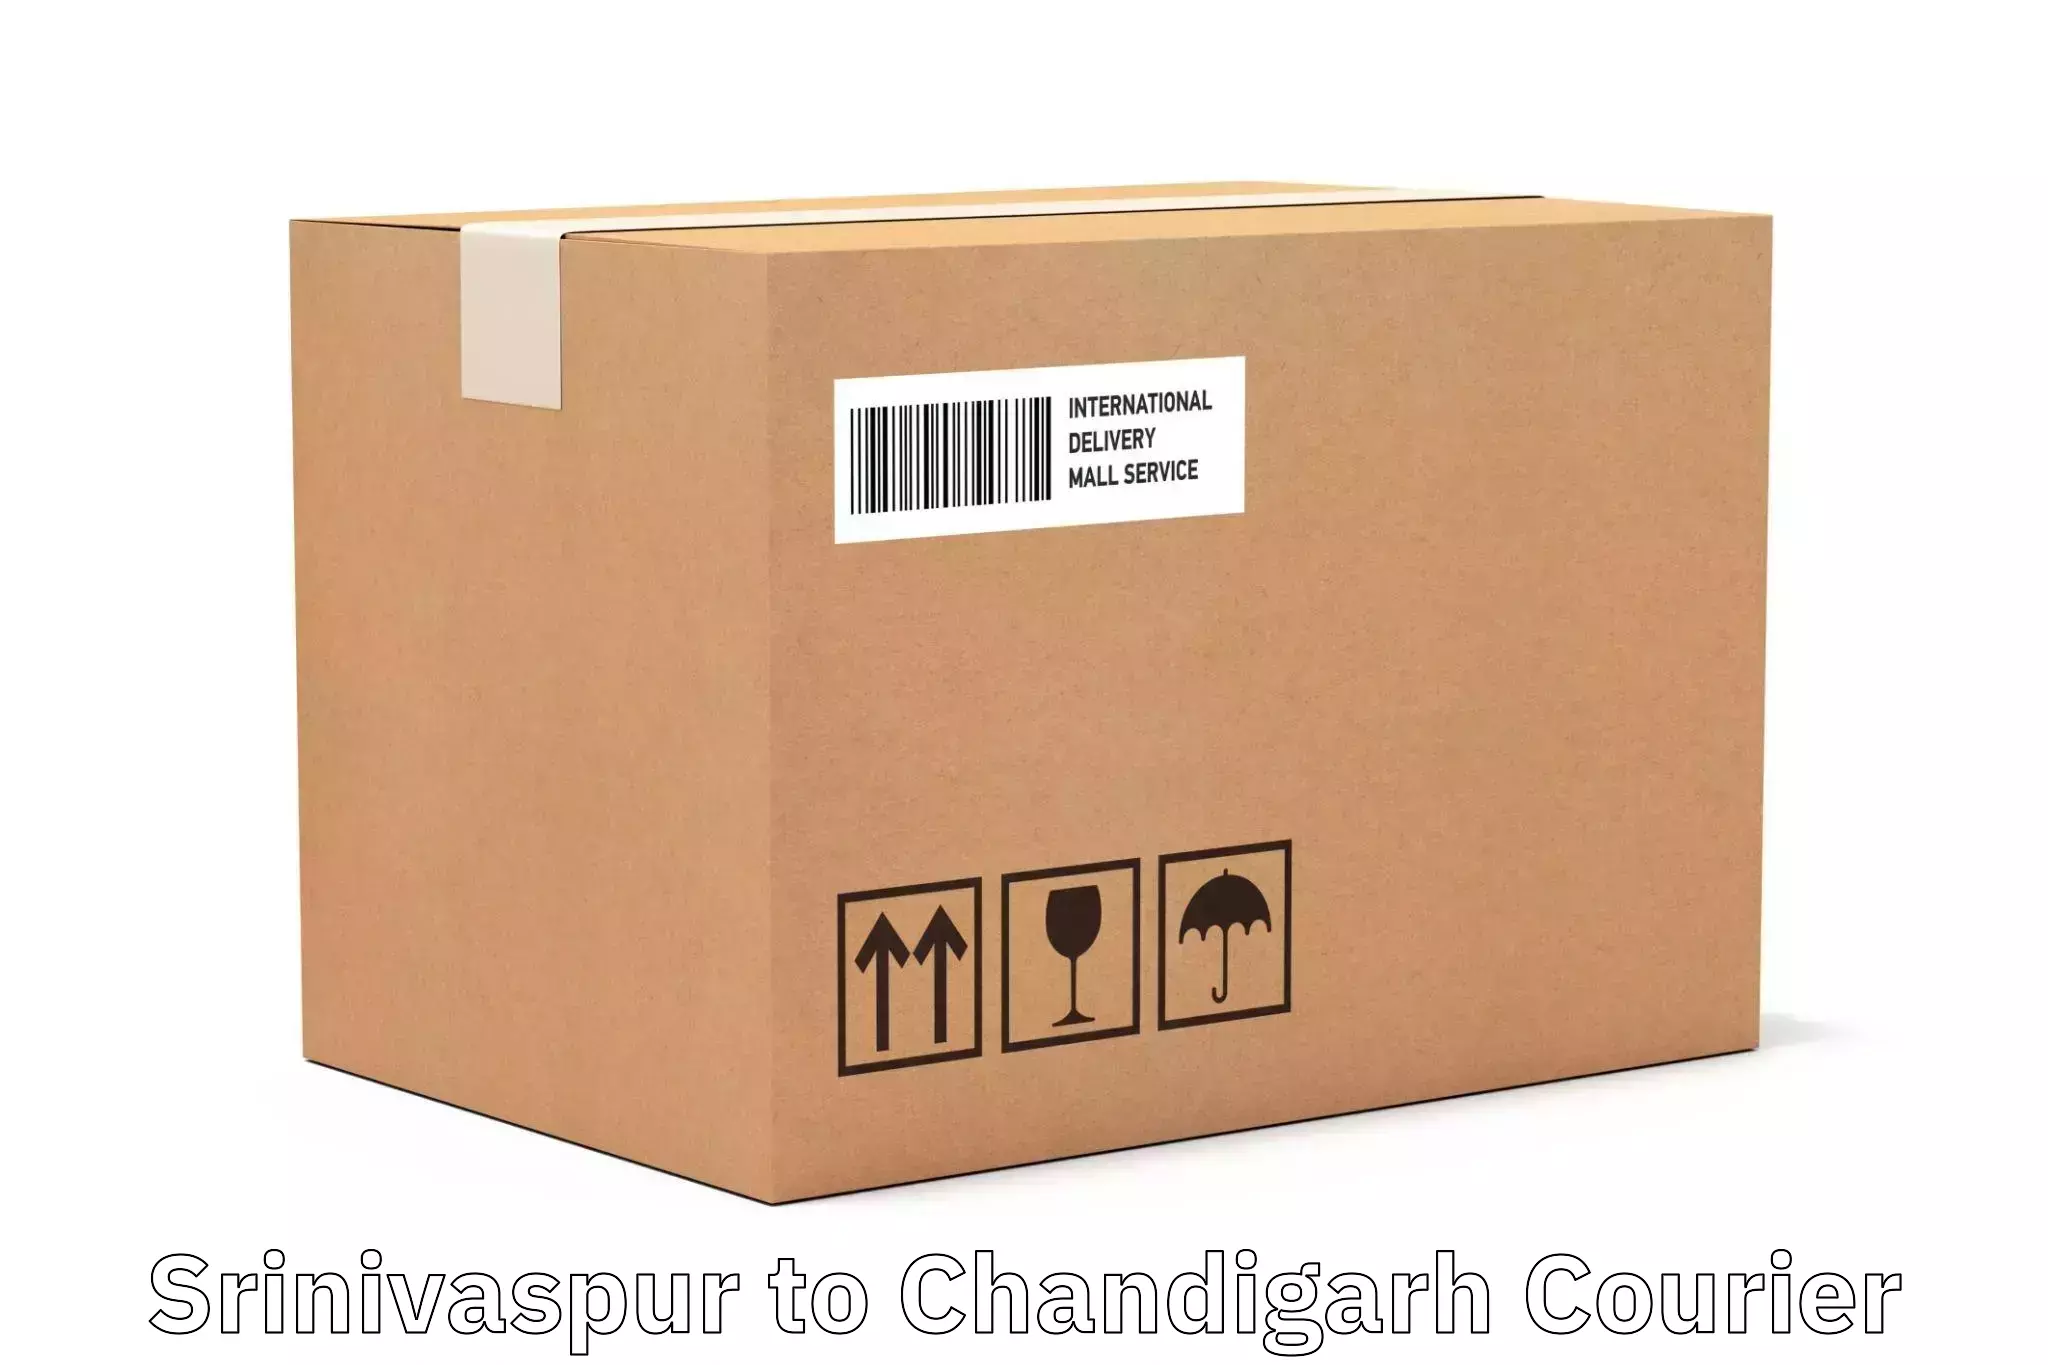 Nationwide parcel services Srinivaspur to Chandigarh